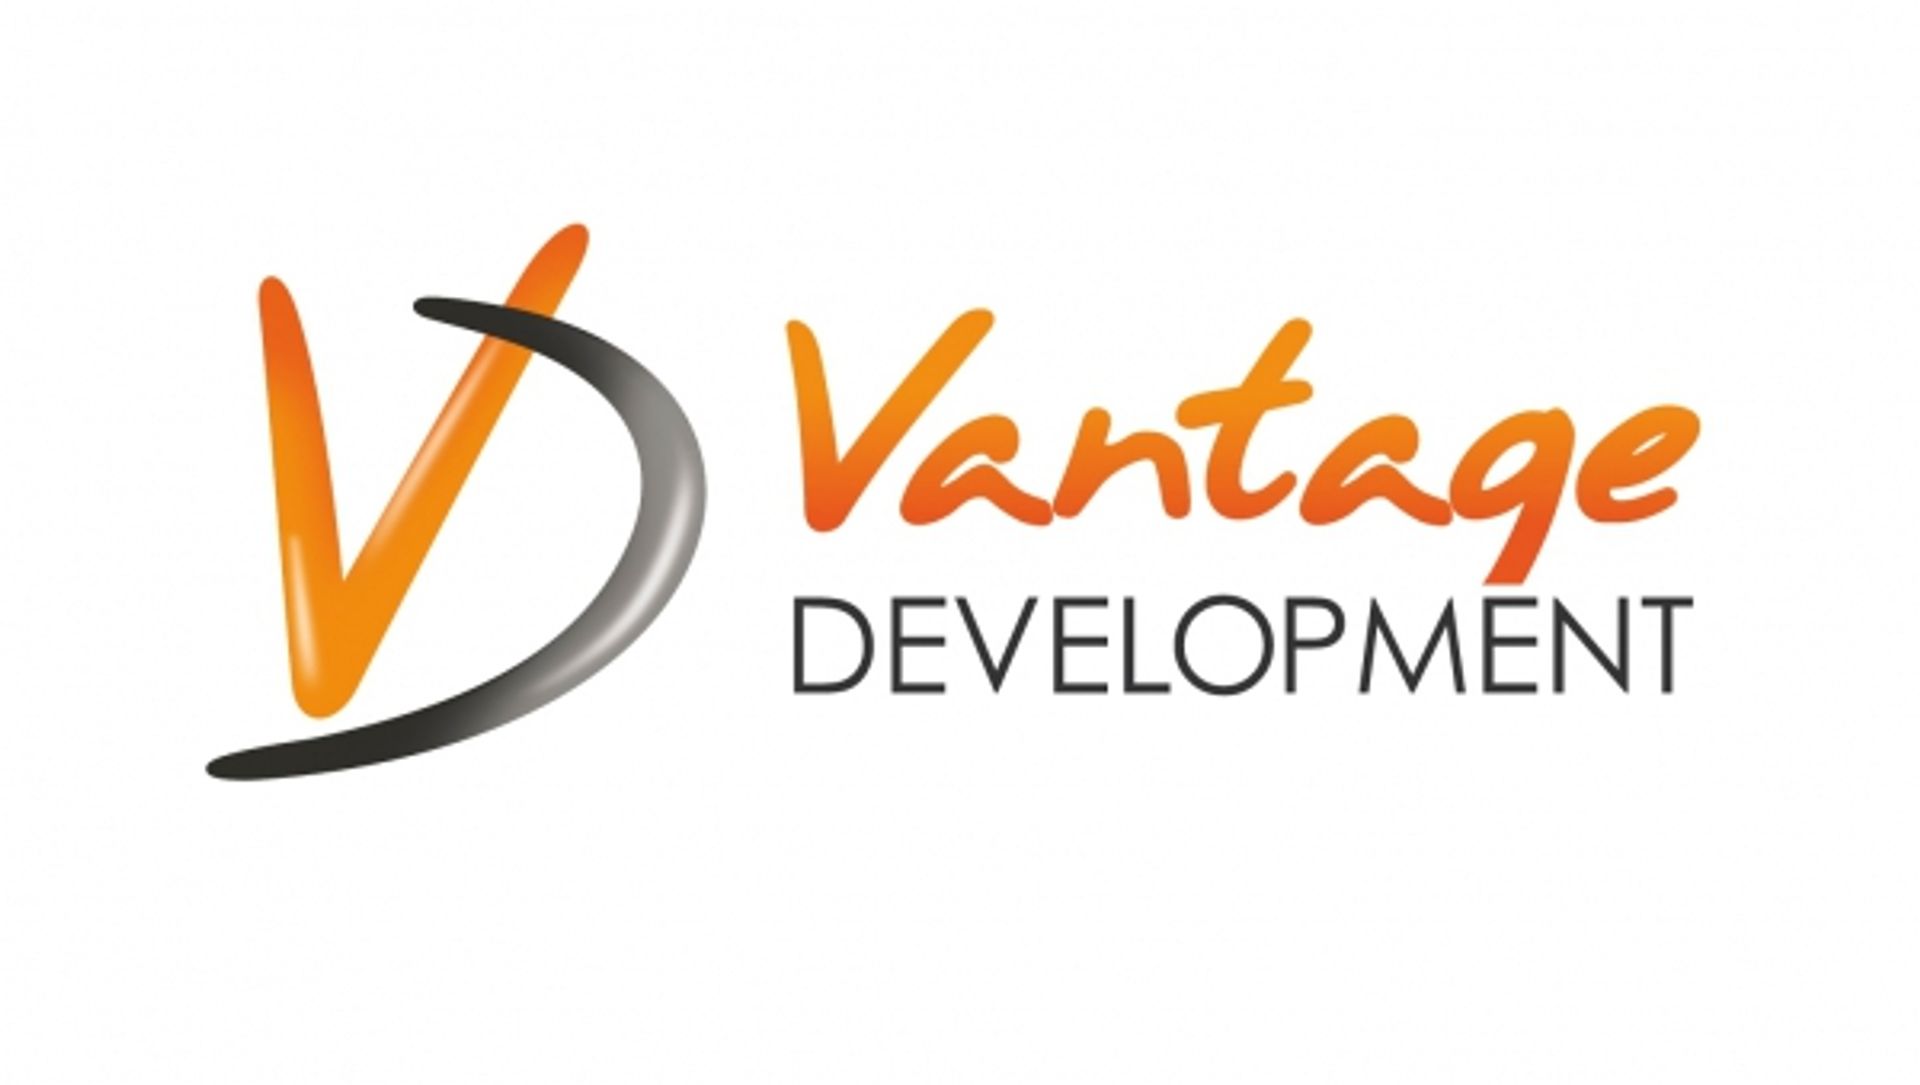  Vantage Development na pierwszym miejscu wśród deweloperów w sprzedaży mieszkań we Wrocławiu